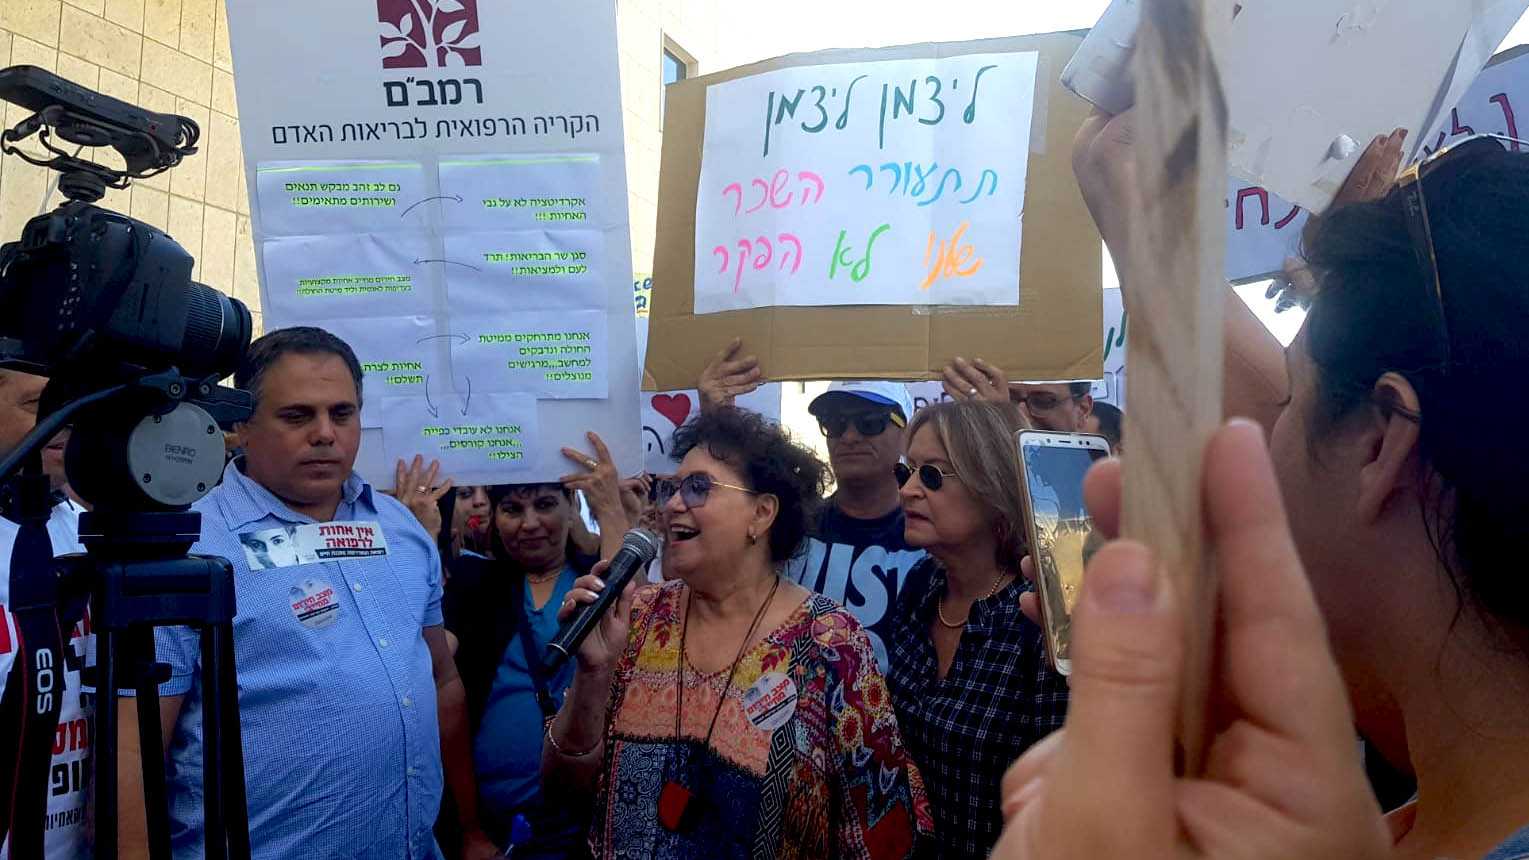 שאול סקיף, לצדה של אילנה כהן בהפגנת אחיות מול משרד הבריאות בירושלים, 22 ביולי 2019 (טל כרמון)